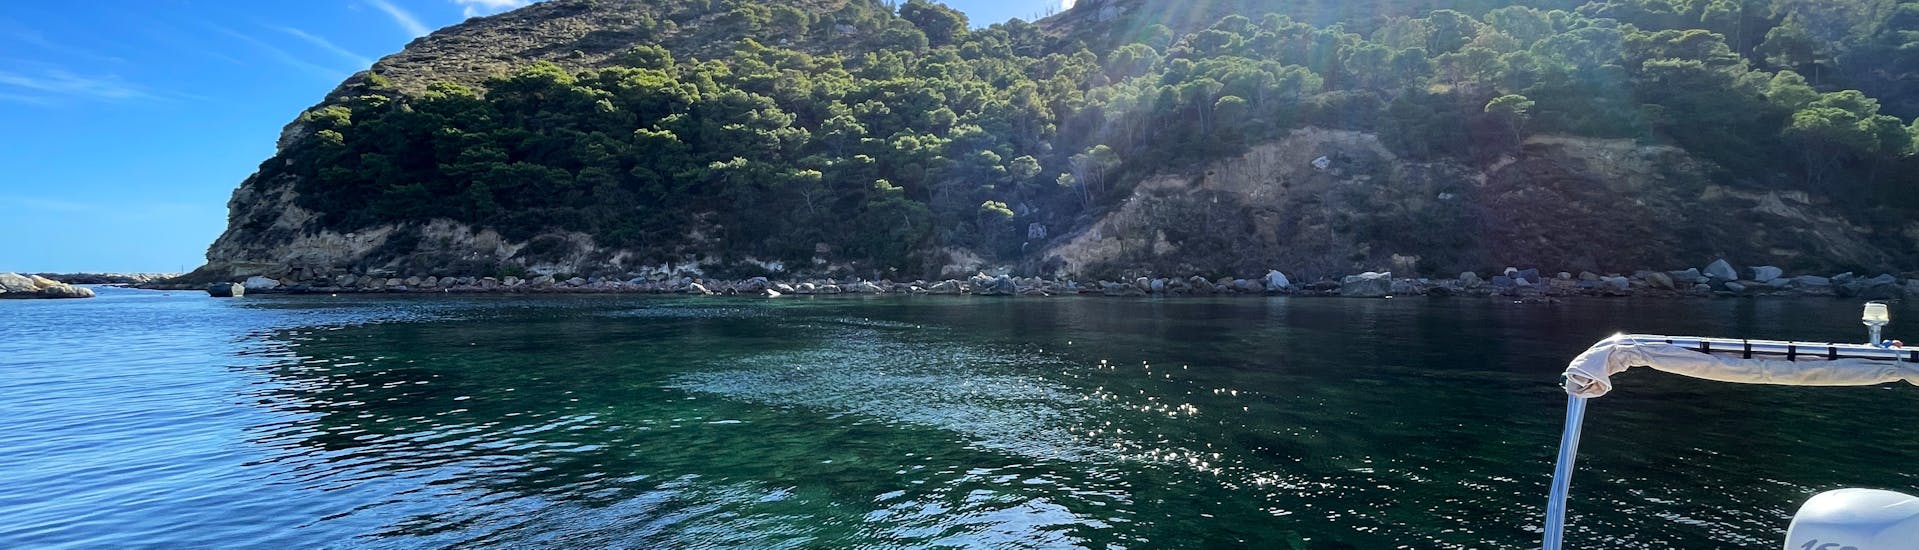 Gita in gommone lungo la Costa di Cagliari con snorkeling - Giornata intera.